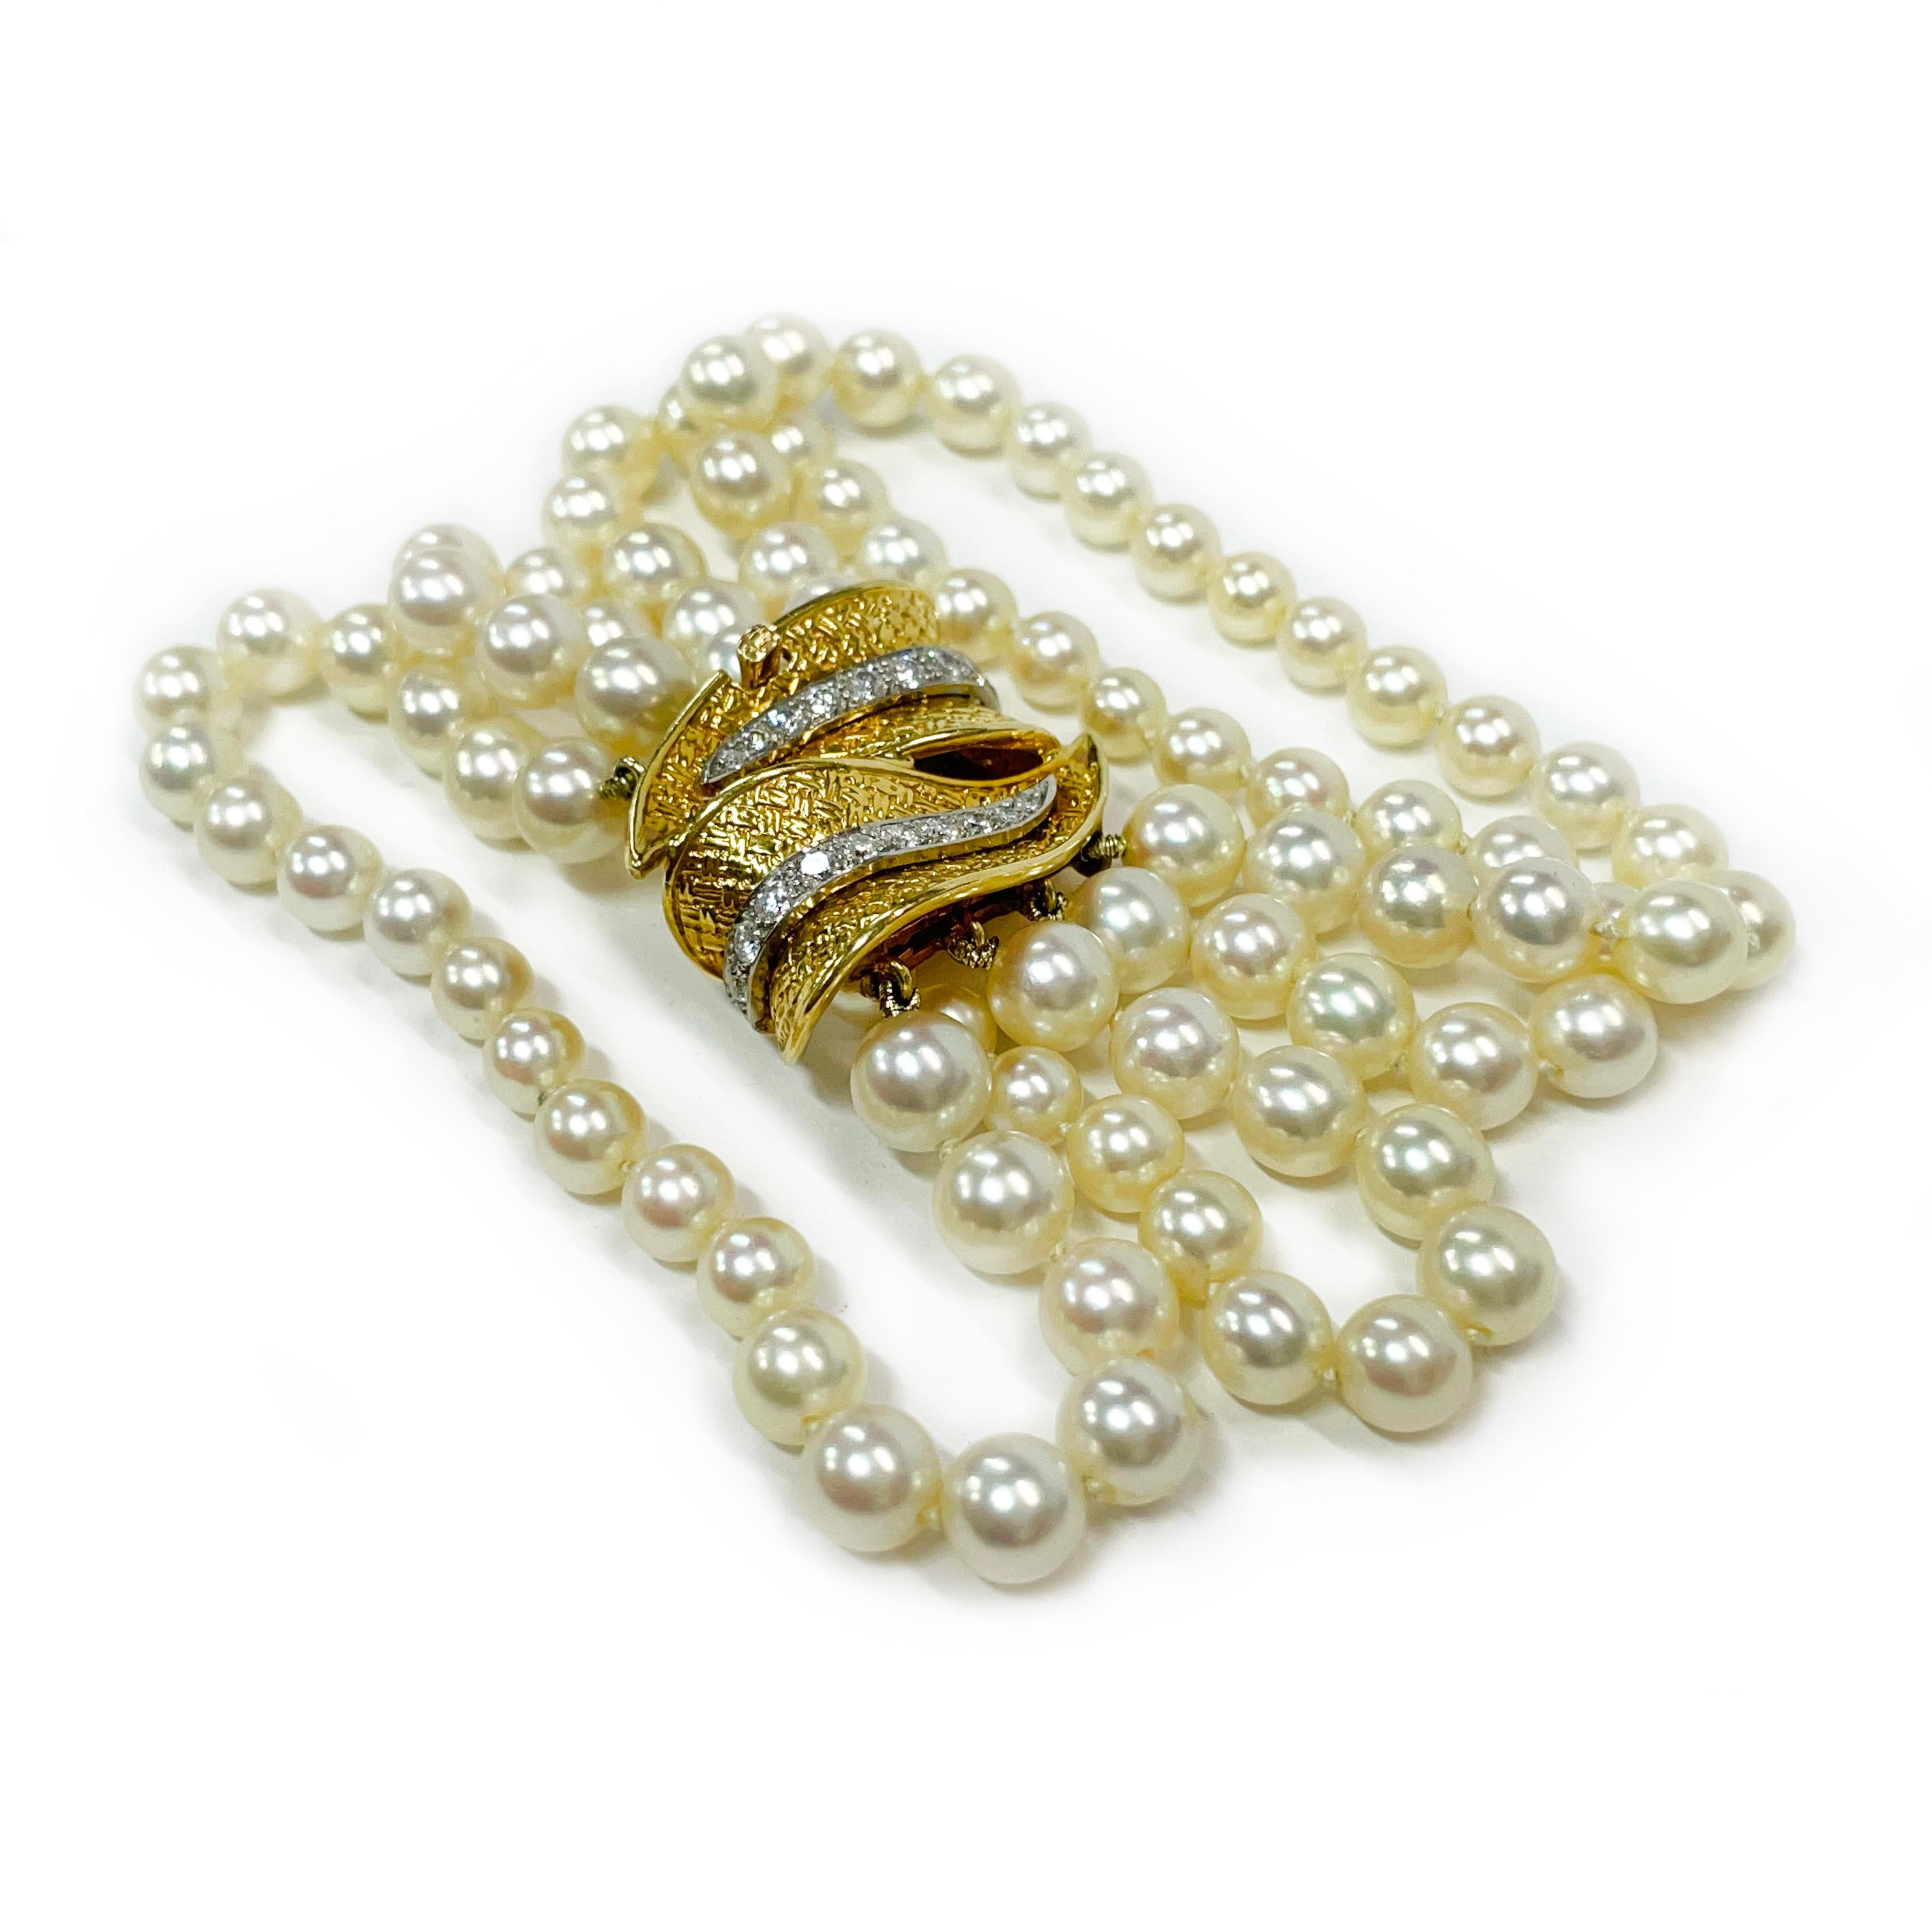 Bracelet en or jaune 18 carats, platine, quatre rangs de perles et de diamants. Très beau bracelet de perles à quatre brins avec un motif de double feuille en or jaune avec des accents de diamants sertis en platine. Le bracelet comporte vingt